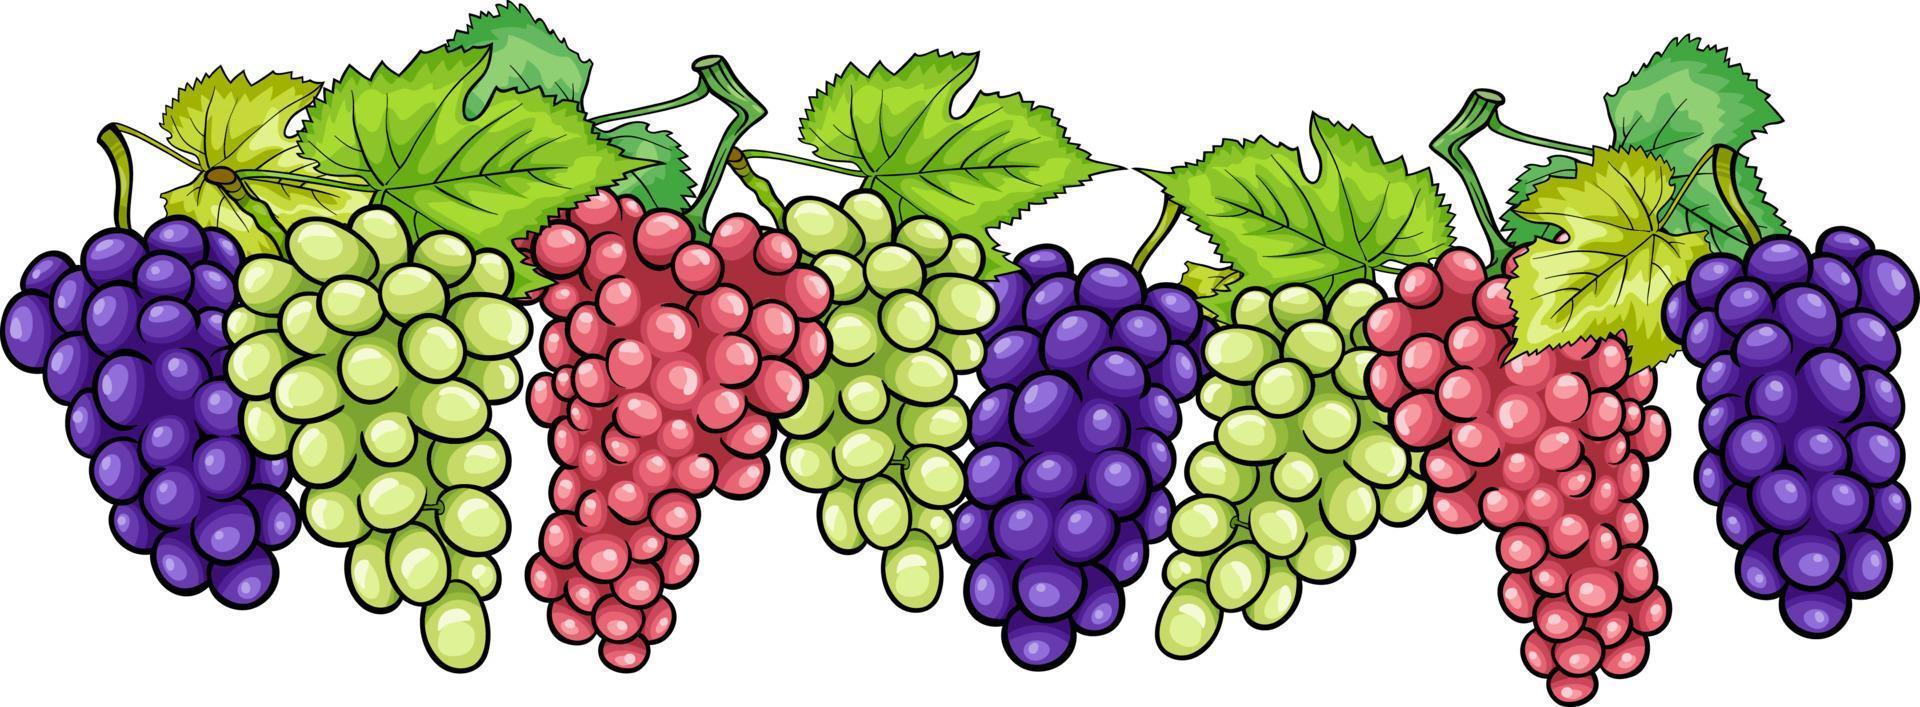 druiventrossen fruit cartoon illustratie vector